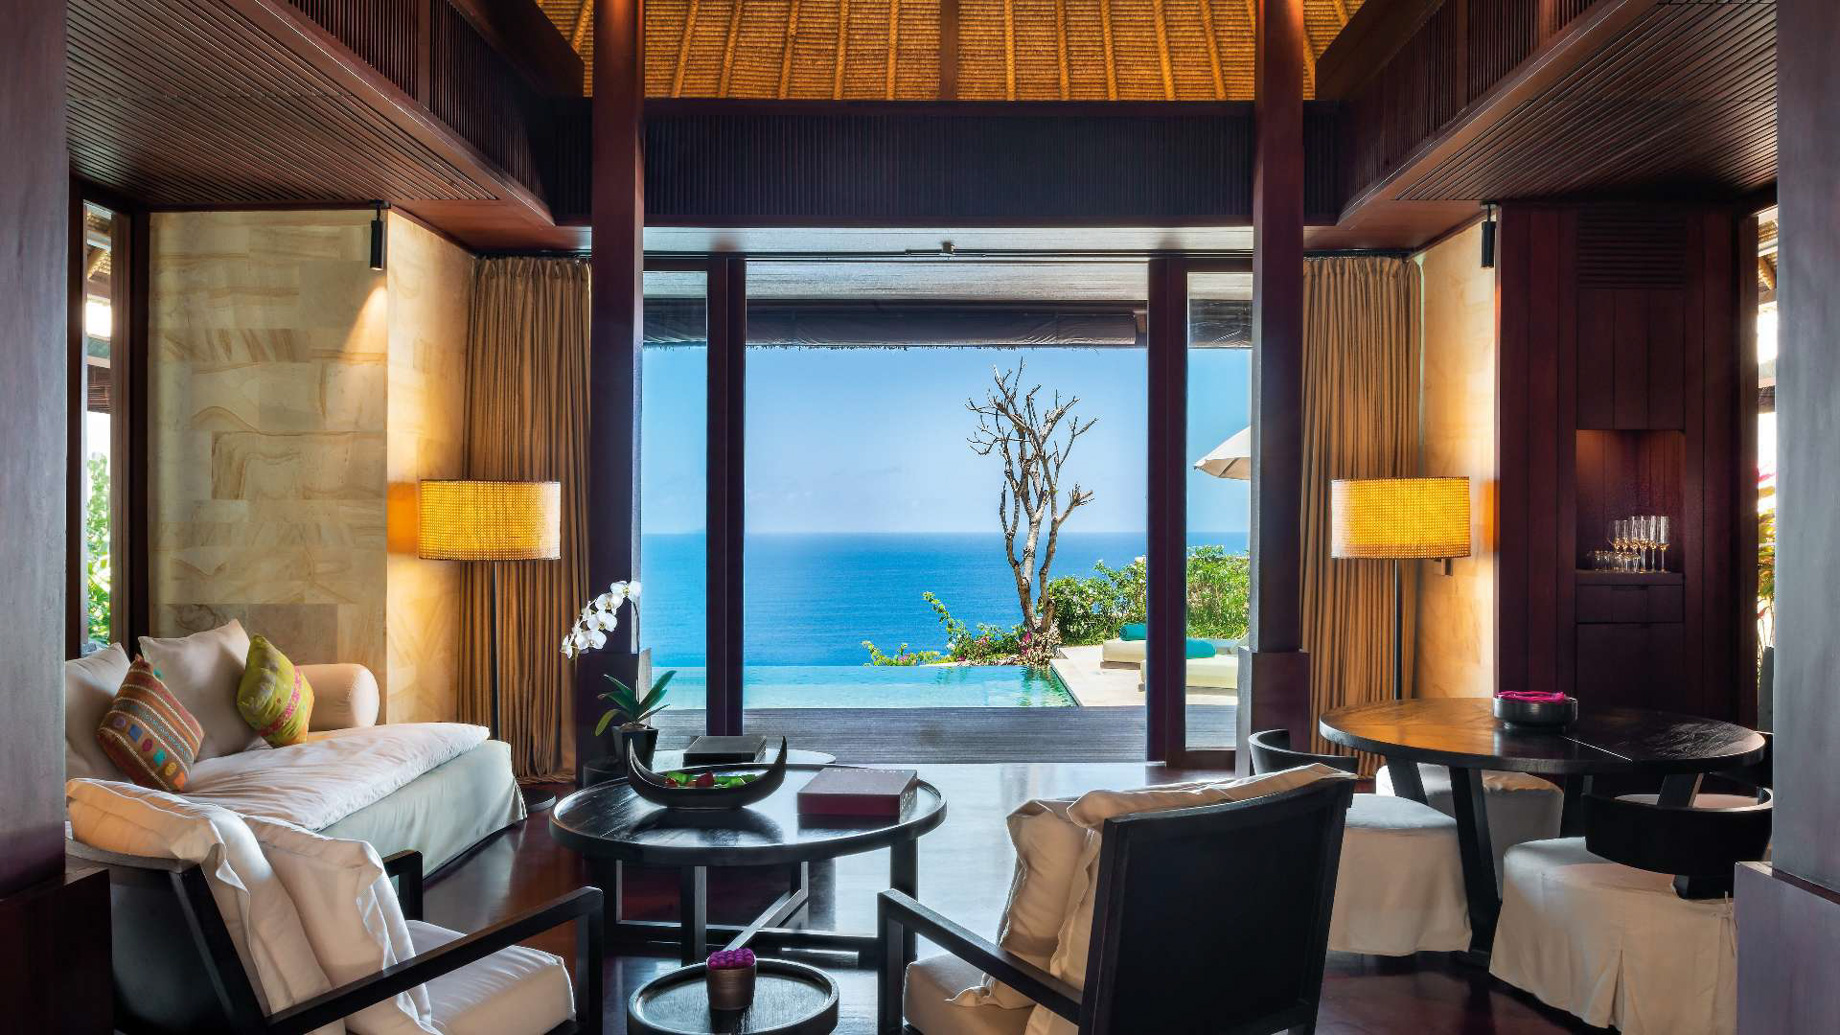 Bvlgari Resort Bali – Uluwatu, Bali, Indonesia – Ocean Cliff Villa Living Room Pool Deck Ocean View